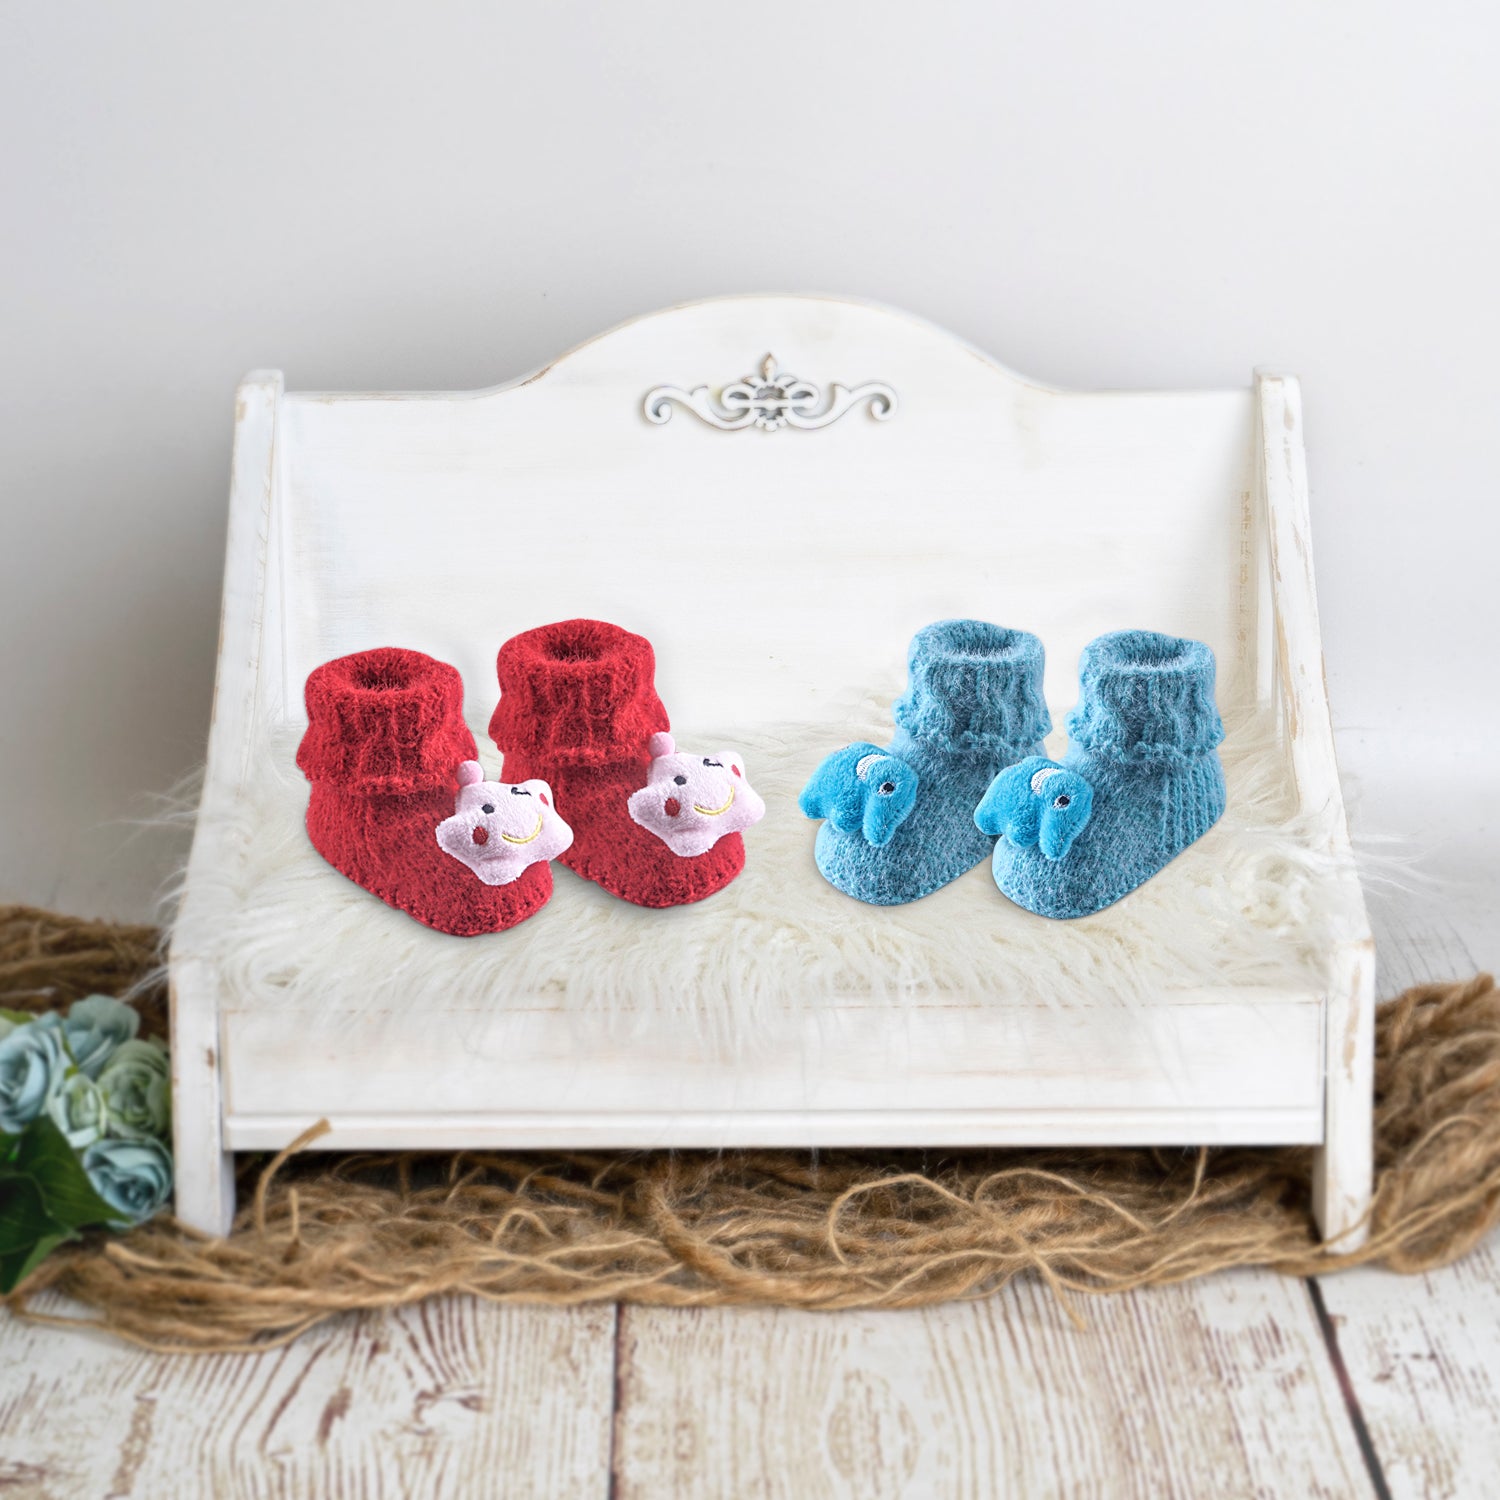 Newborn Crochet Woollen Booties Star Elephant - Blue, Red